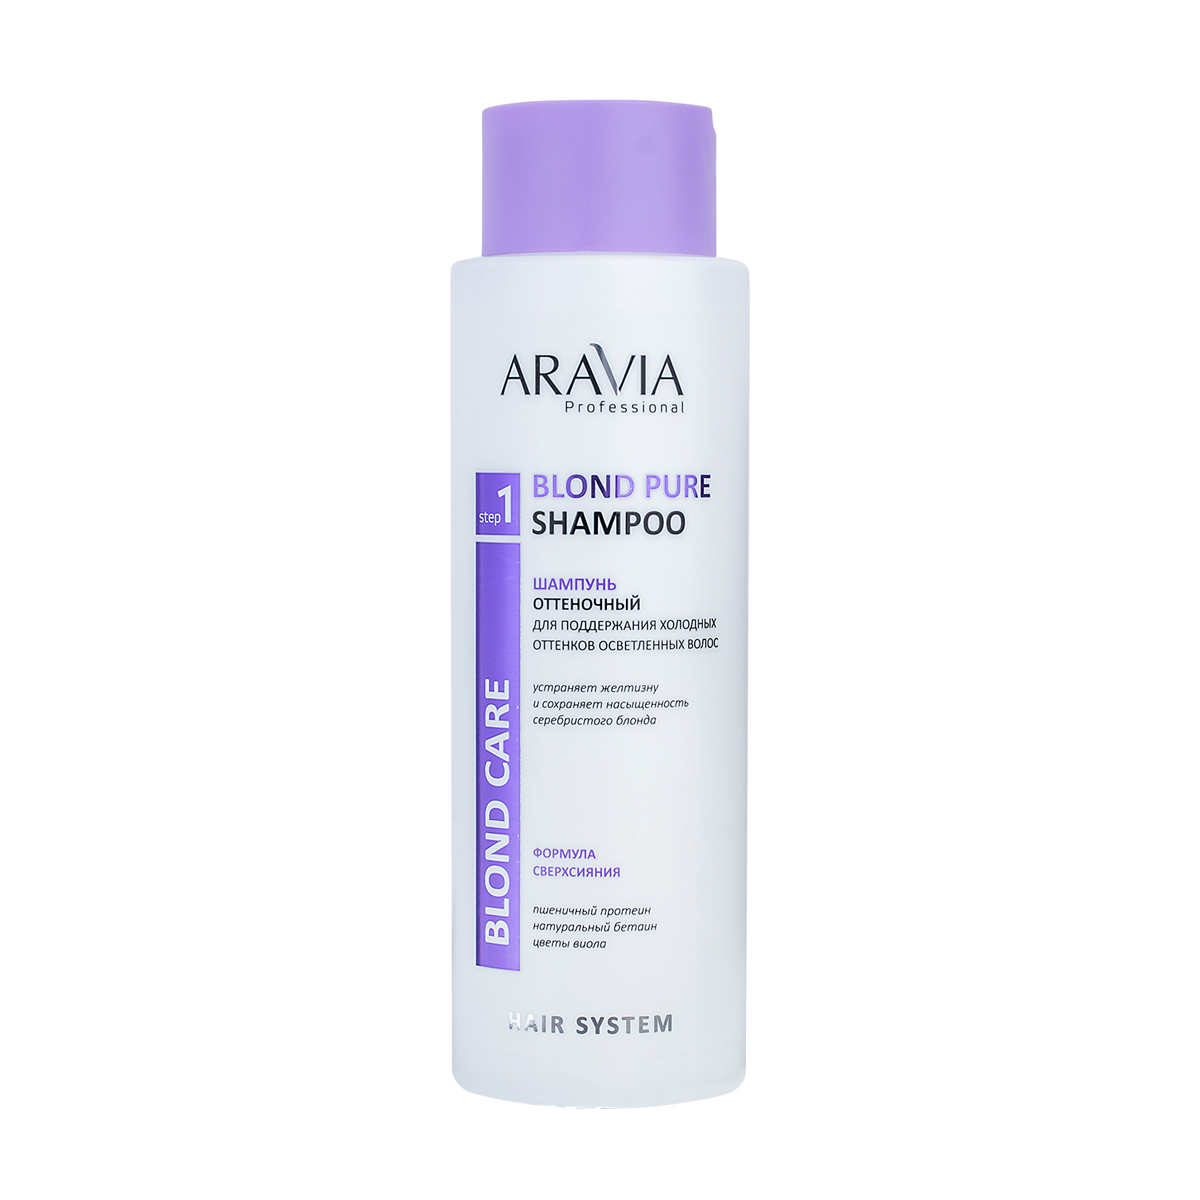 Купить Aravia Professional Шампунь оттеночный для поддержания холодных оттенков осветленных волос Blond Pure Shampoo, 400 мл (Aravia Professional, Уход за волосами), Россия